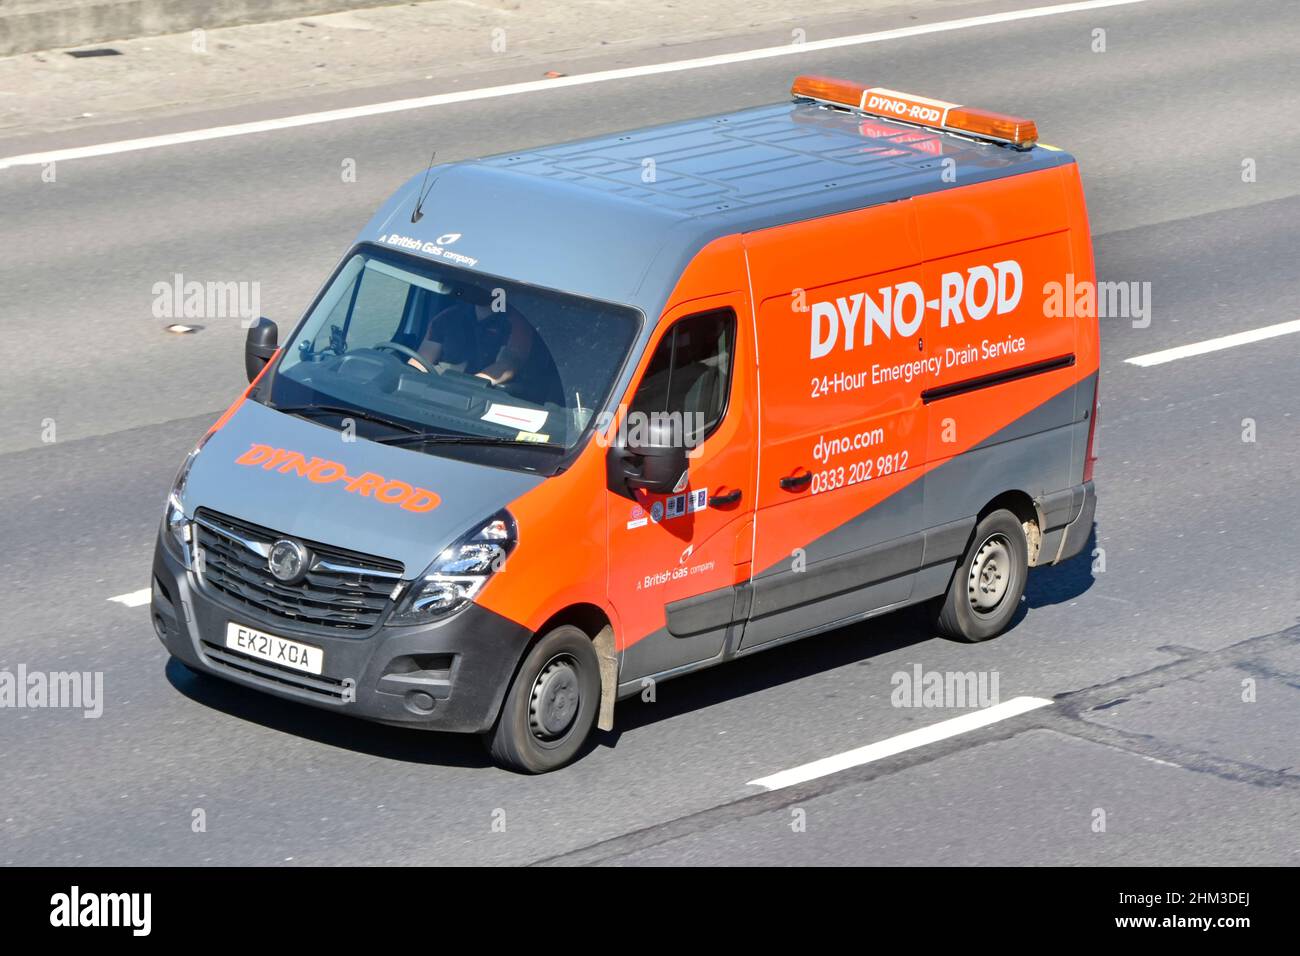 Vista aérea lateral de Dyno Rod van & driver Una empresa de gas británica que anuncia servicio de desagüe de emergencia las 24 horas en la conducción de vehículos 0n uk autopista Foto de stock